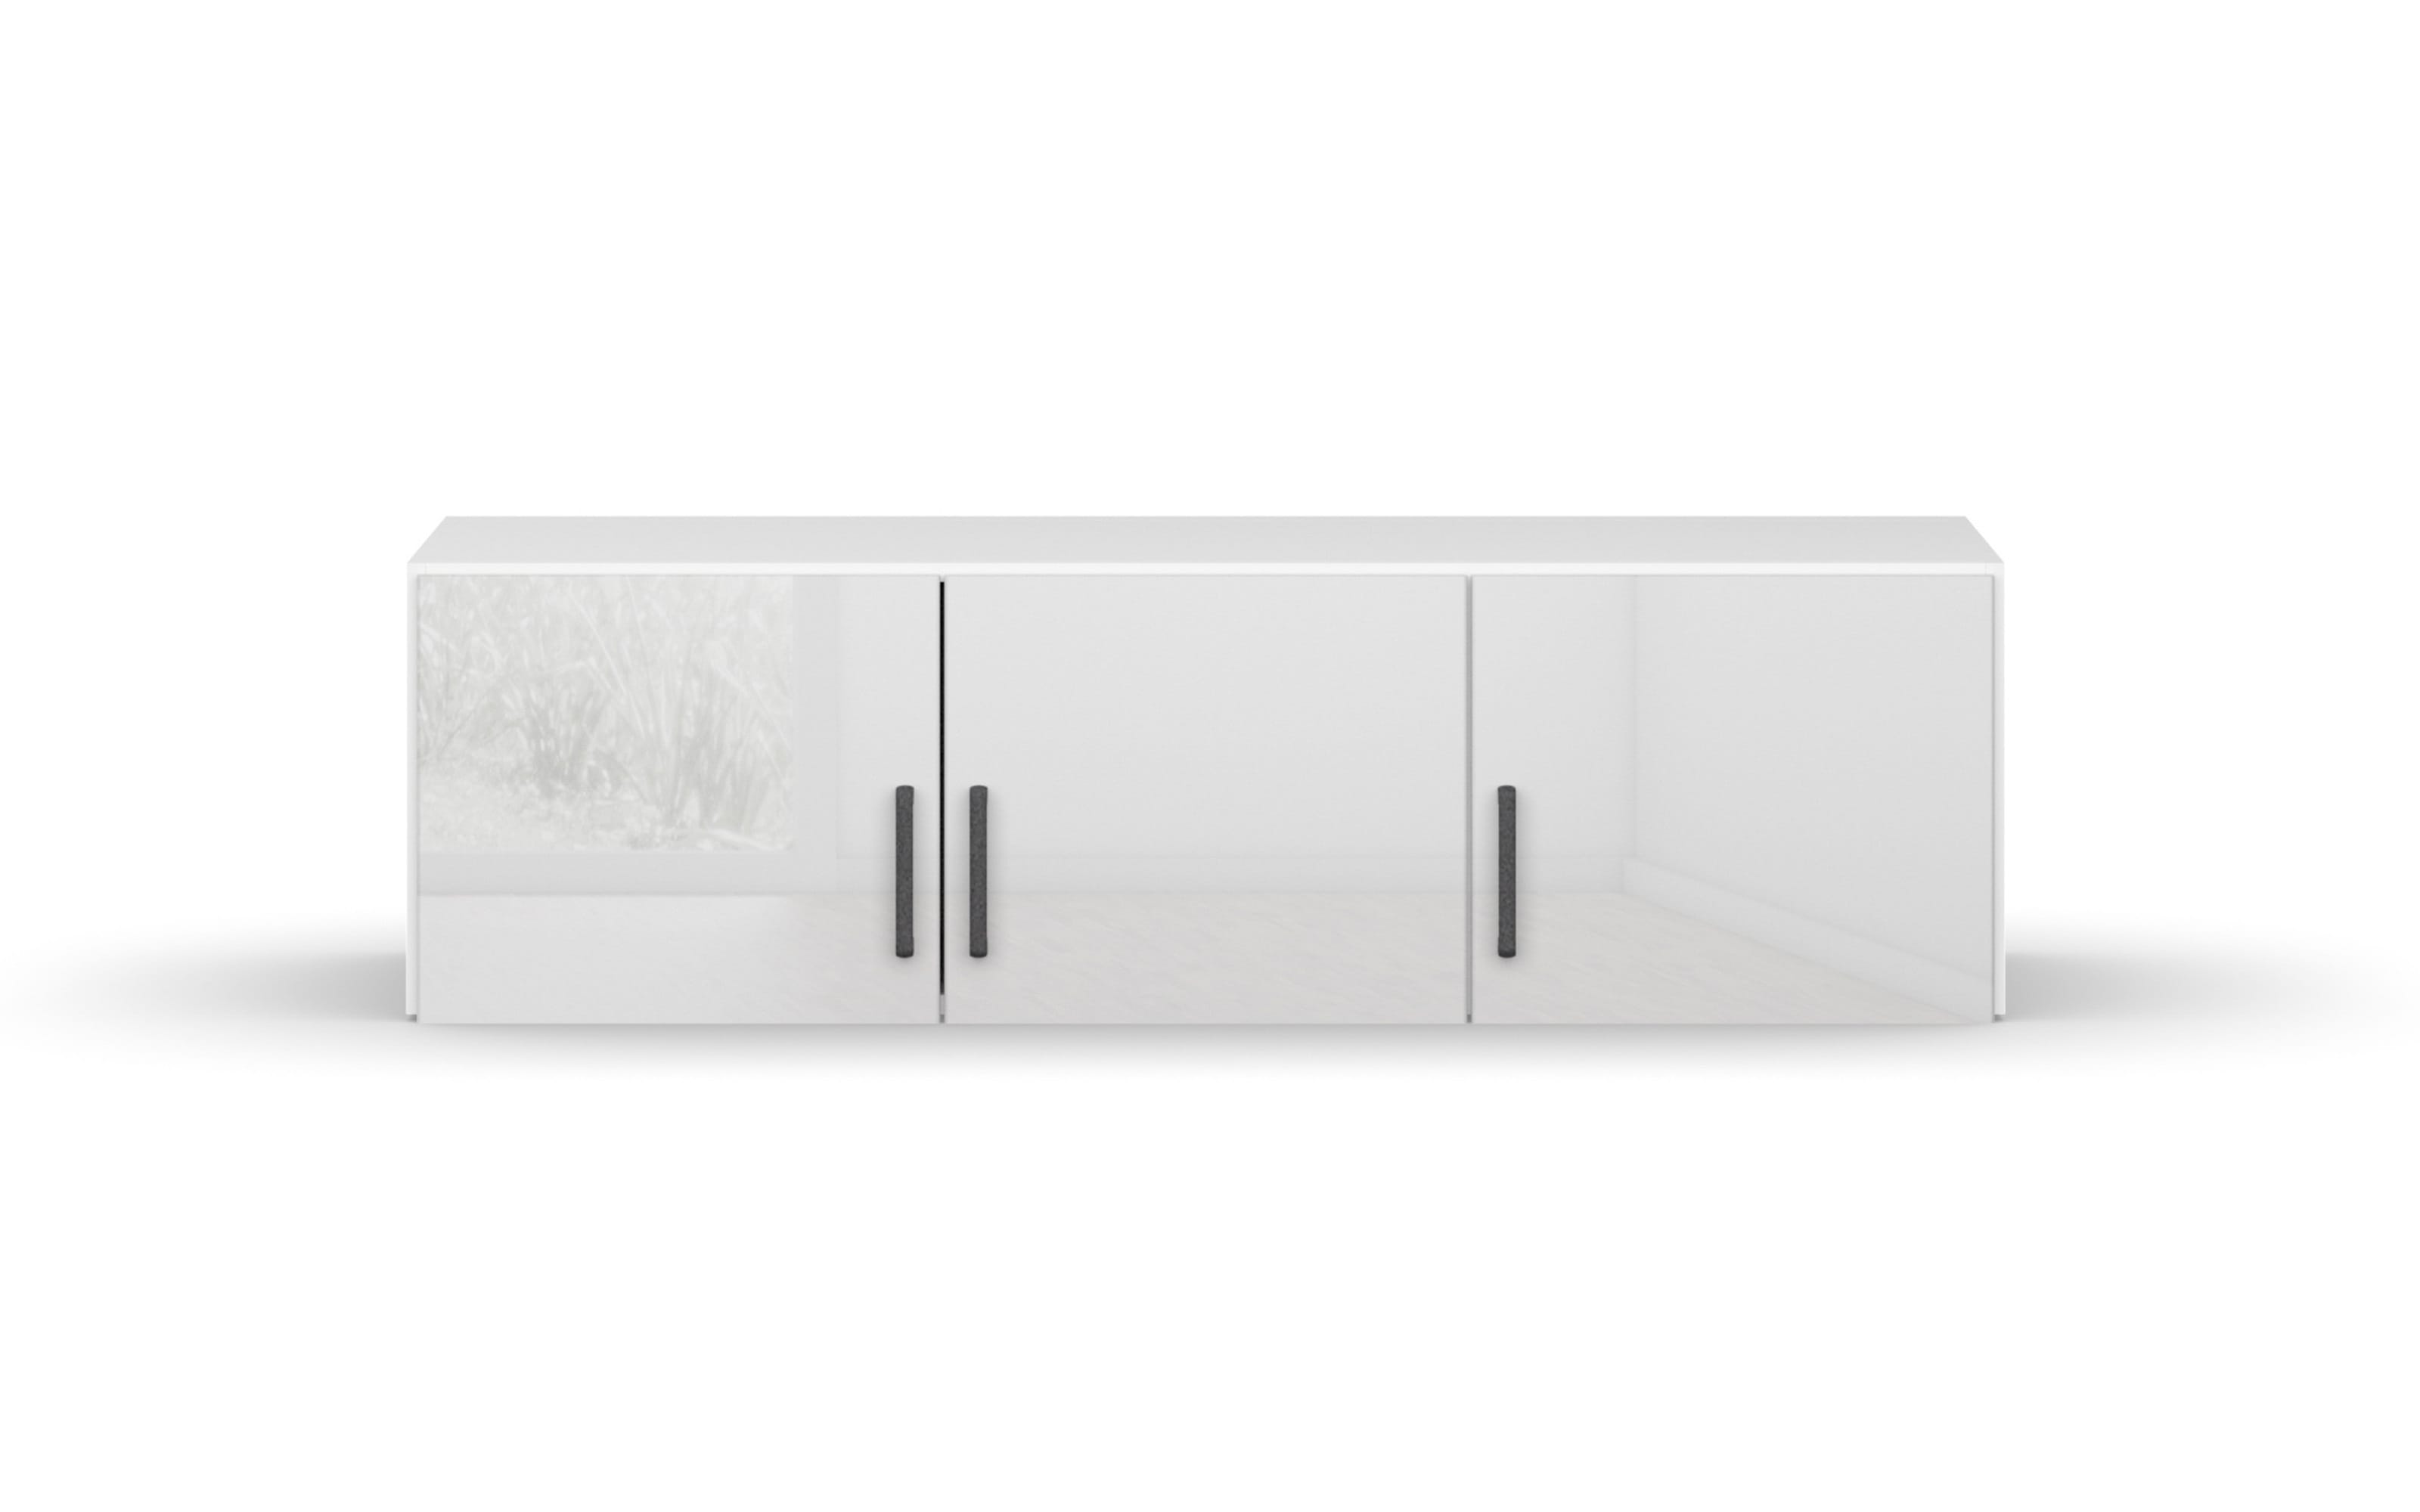 Aufsatzelement 3307 Allrounder, weiß, 136 x 39 cm 